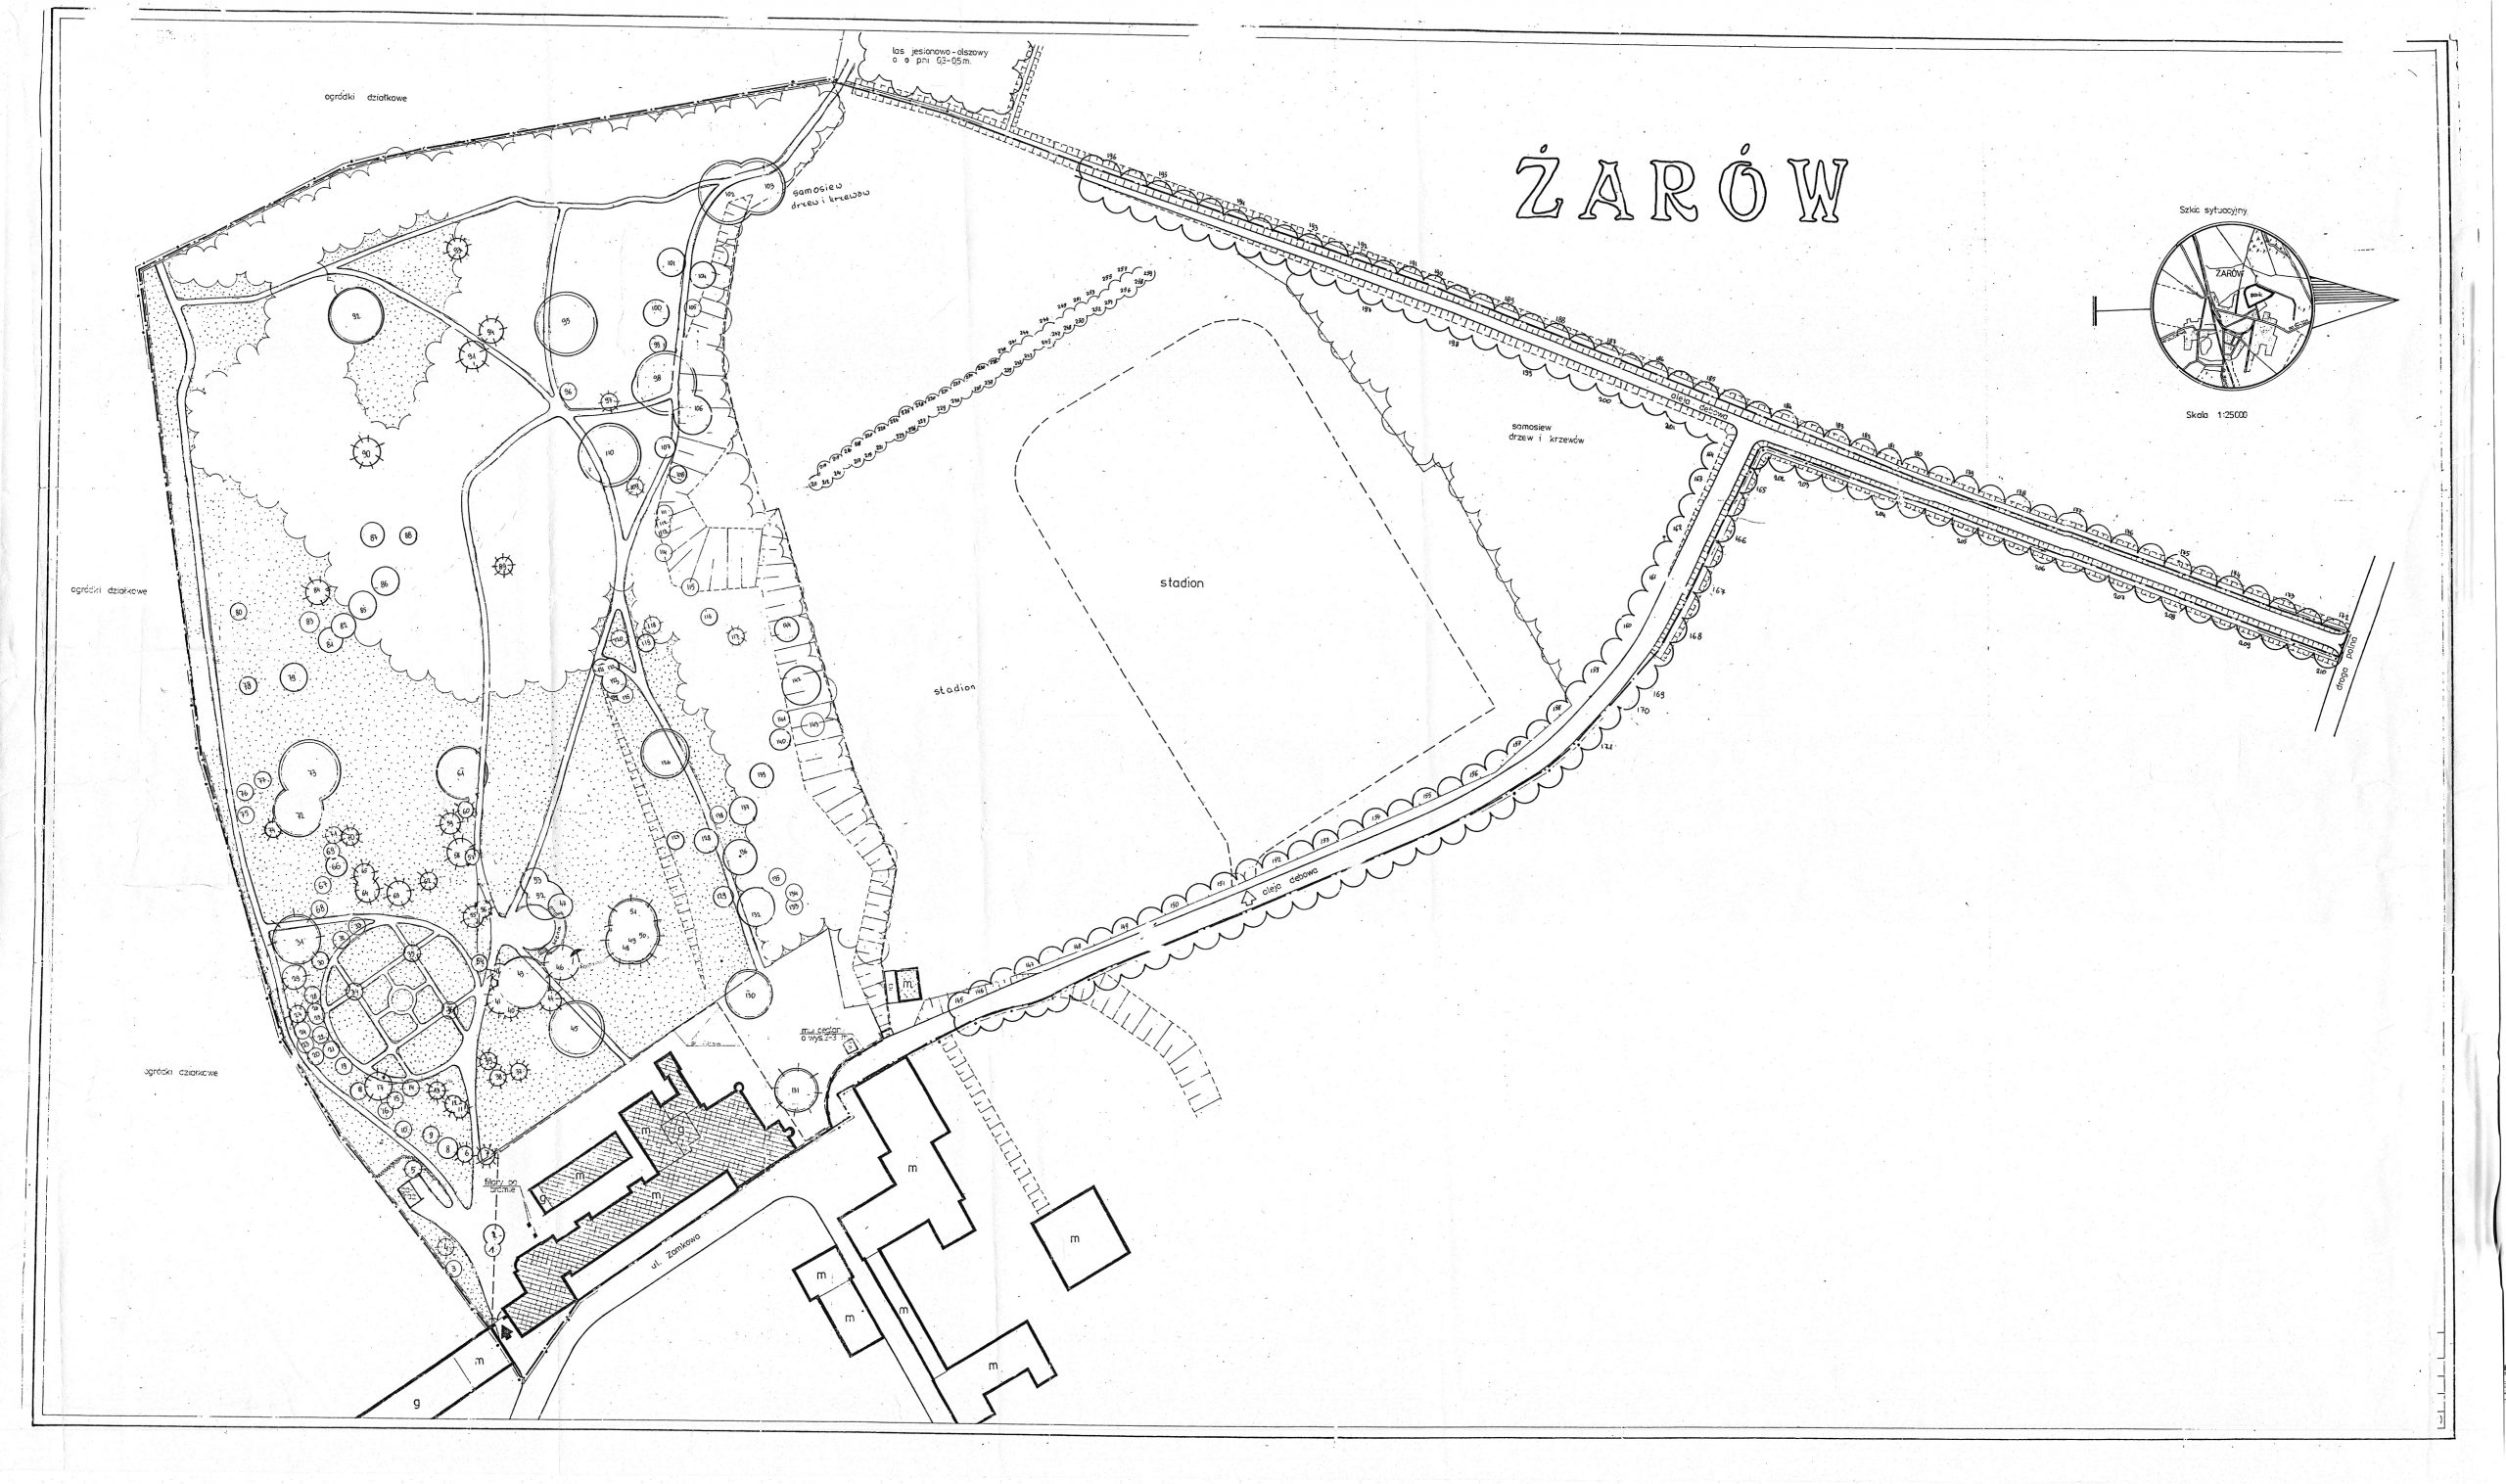 Ewidencja założenia ogrodowo-parkowego 1987 plan